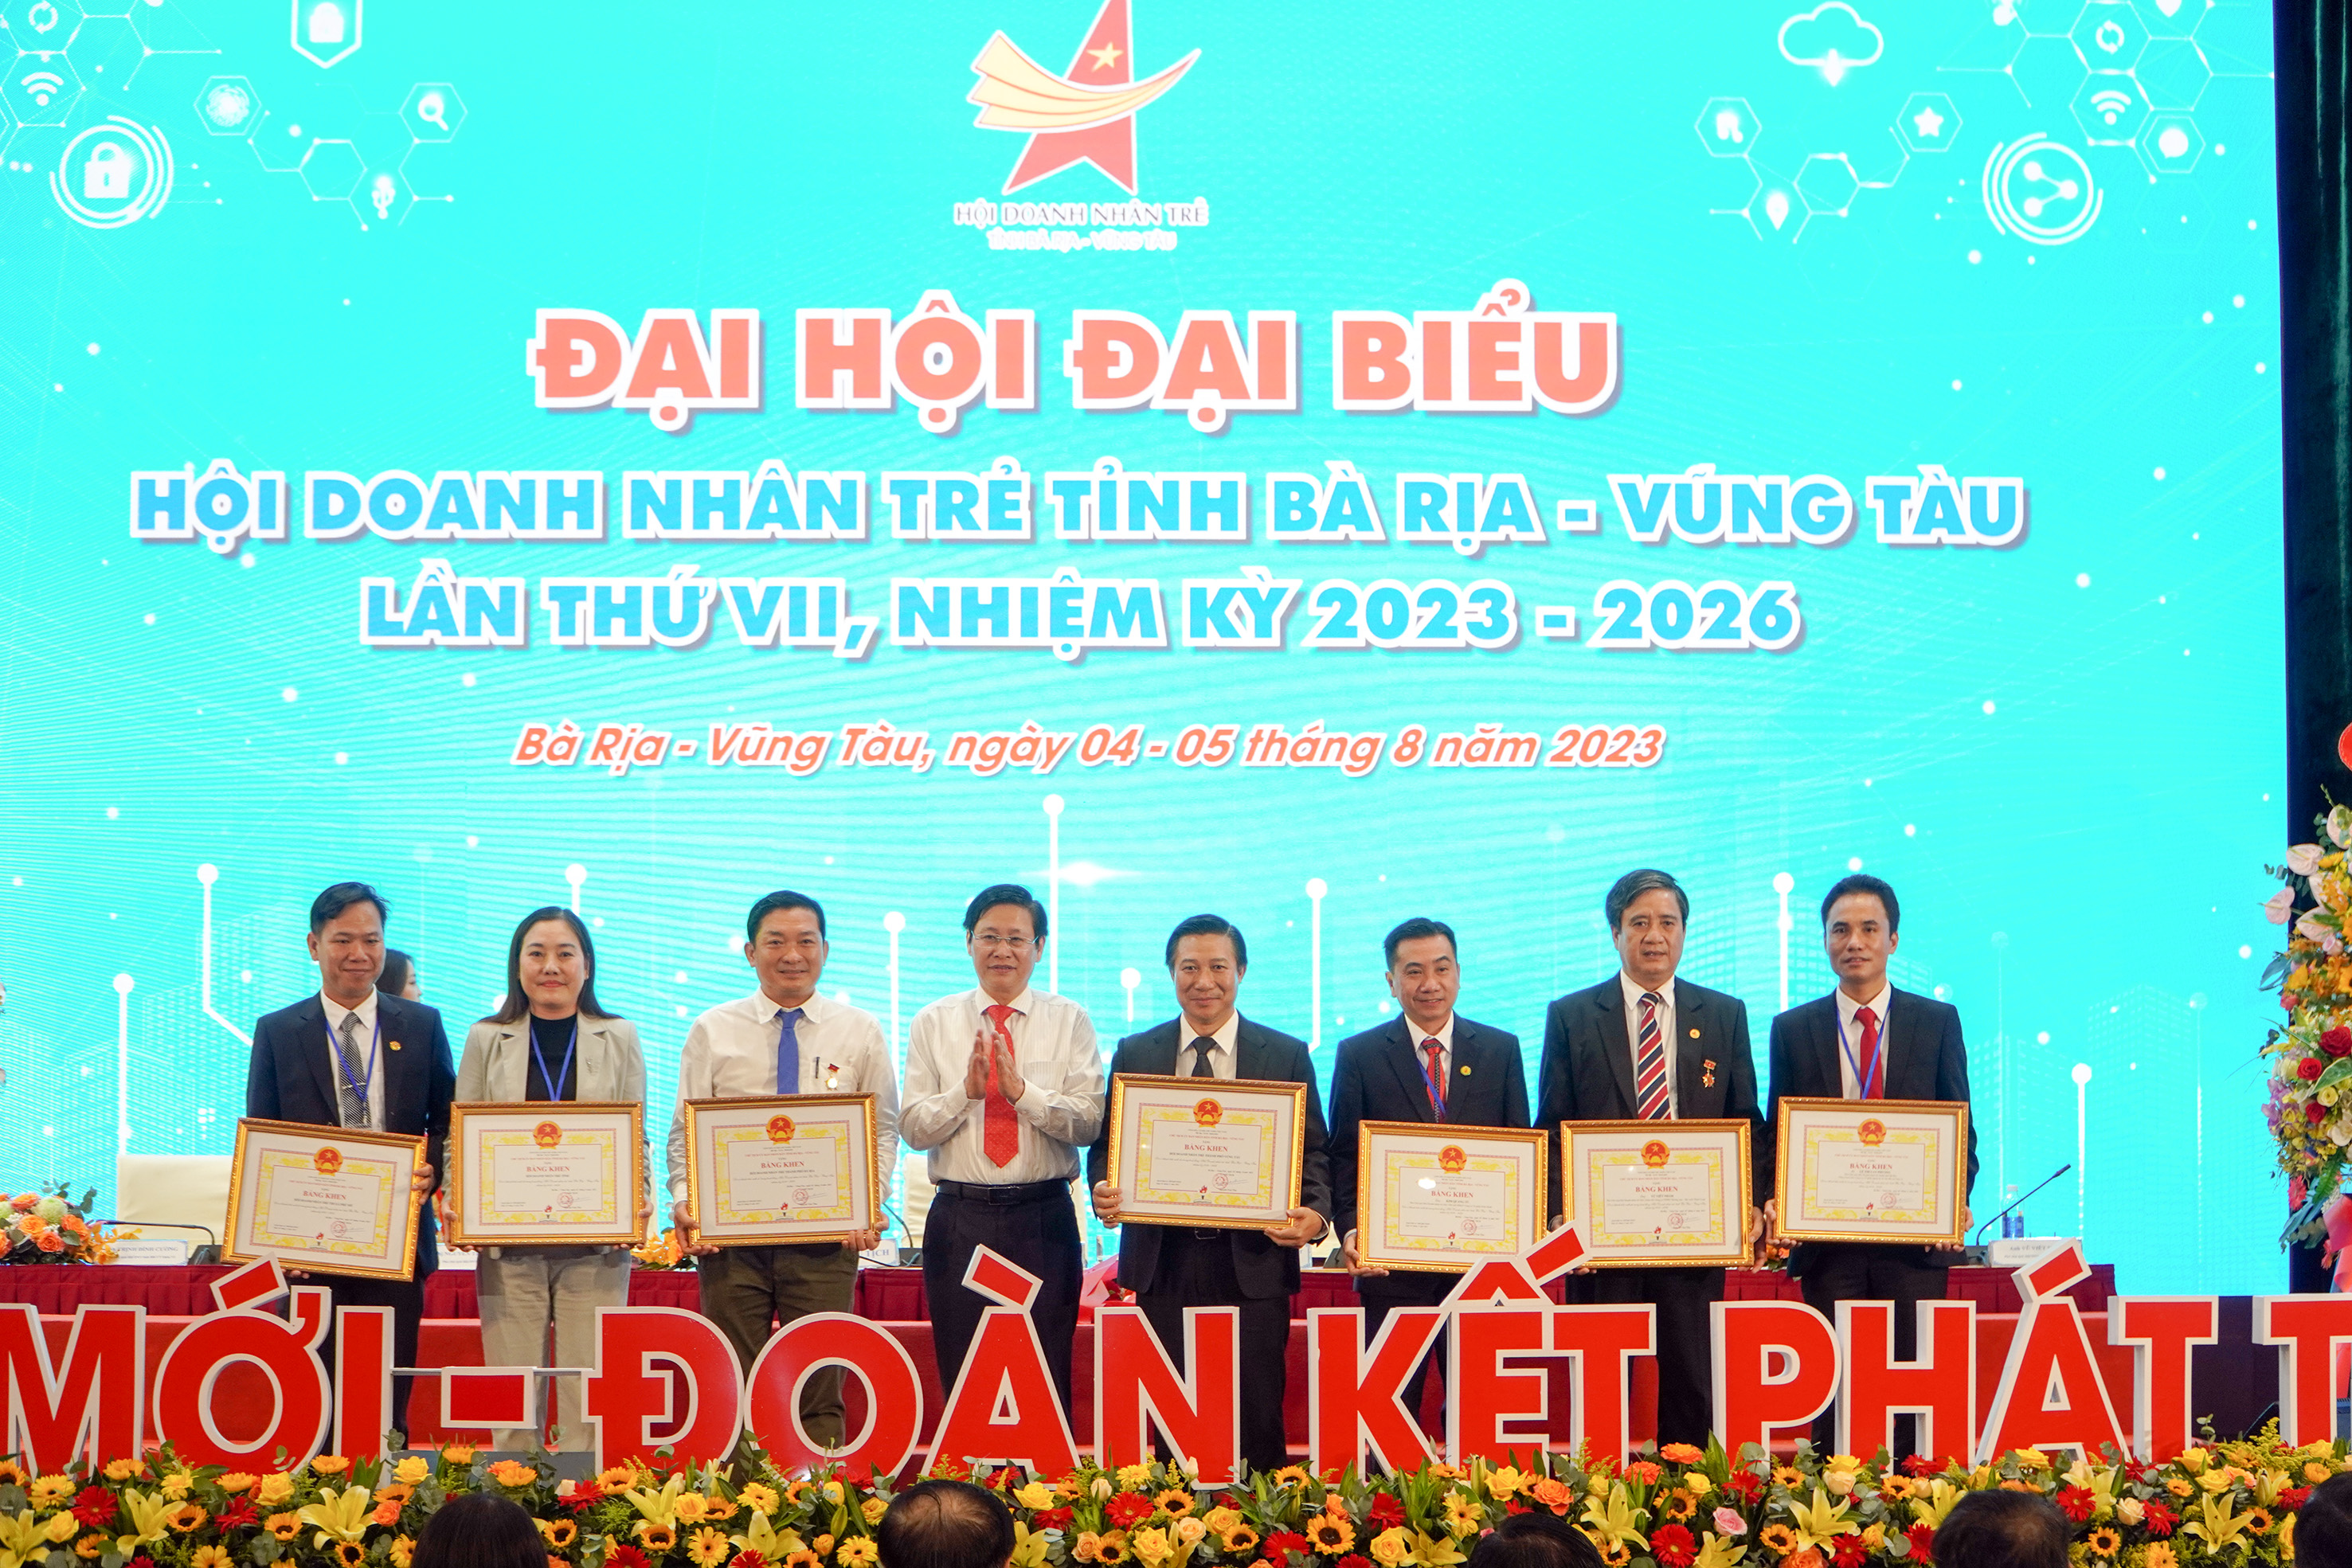 Ông Lê Ngọc Khánh, Phó Chủ tịch UBND tỉnh tặng Bằng khen của UBND tỉnh cho cá nhân có thành tích xuất sắc trong nhiệm kỳ 2019-2022.